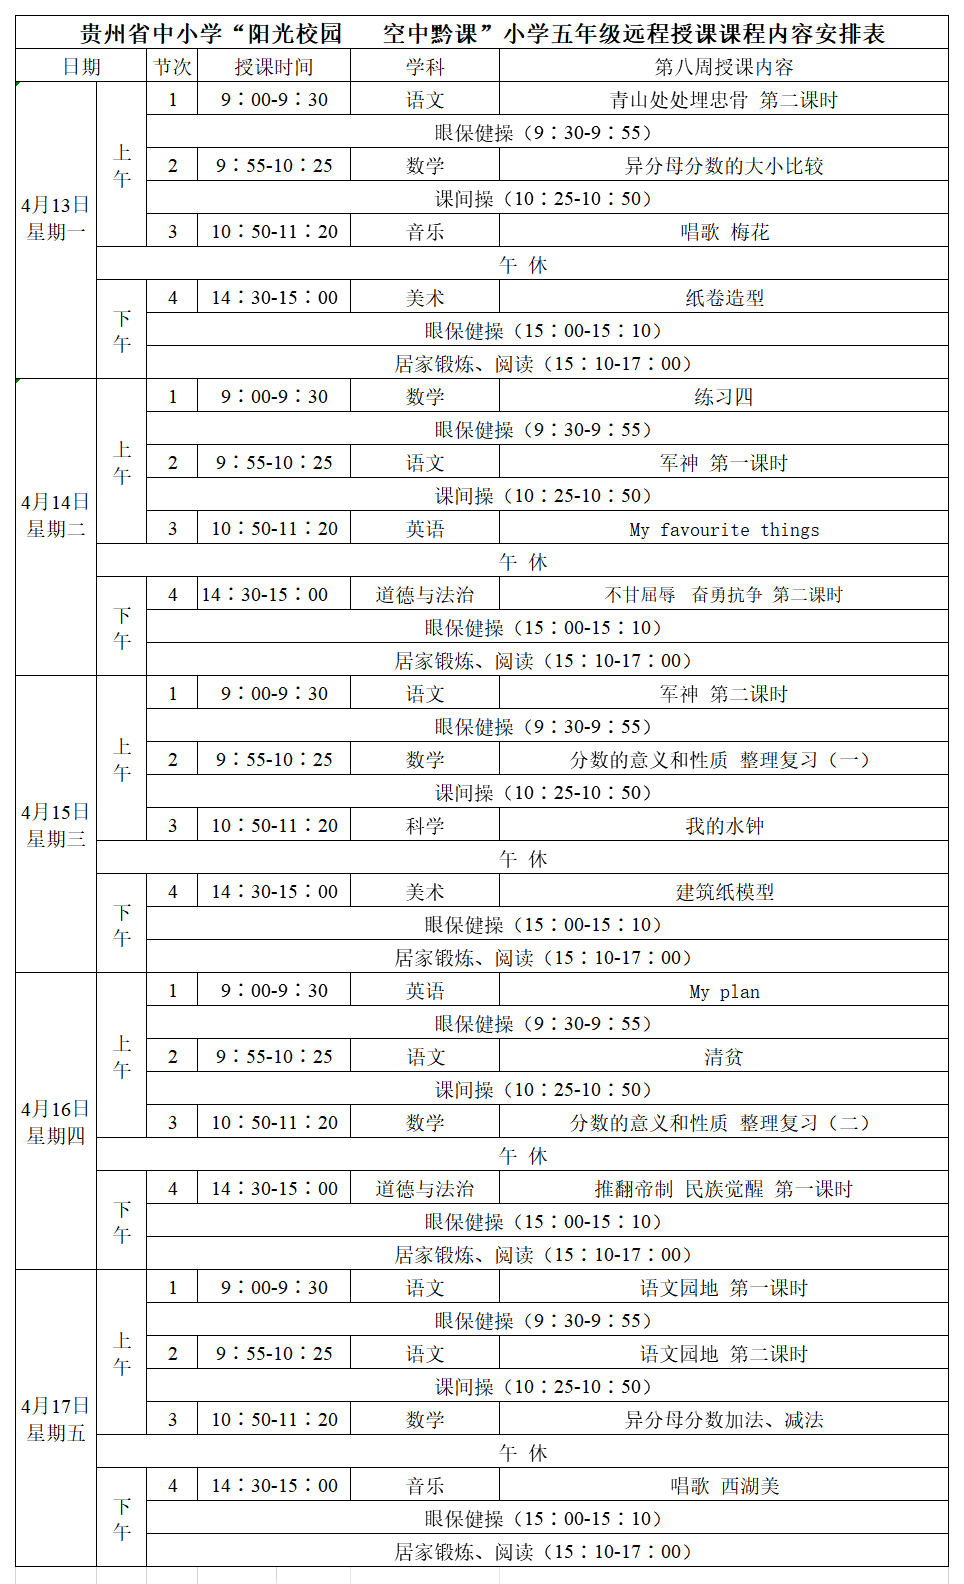 贵州中小学“空中课堂”课程表完整版公布（4月13日10